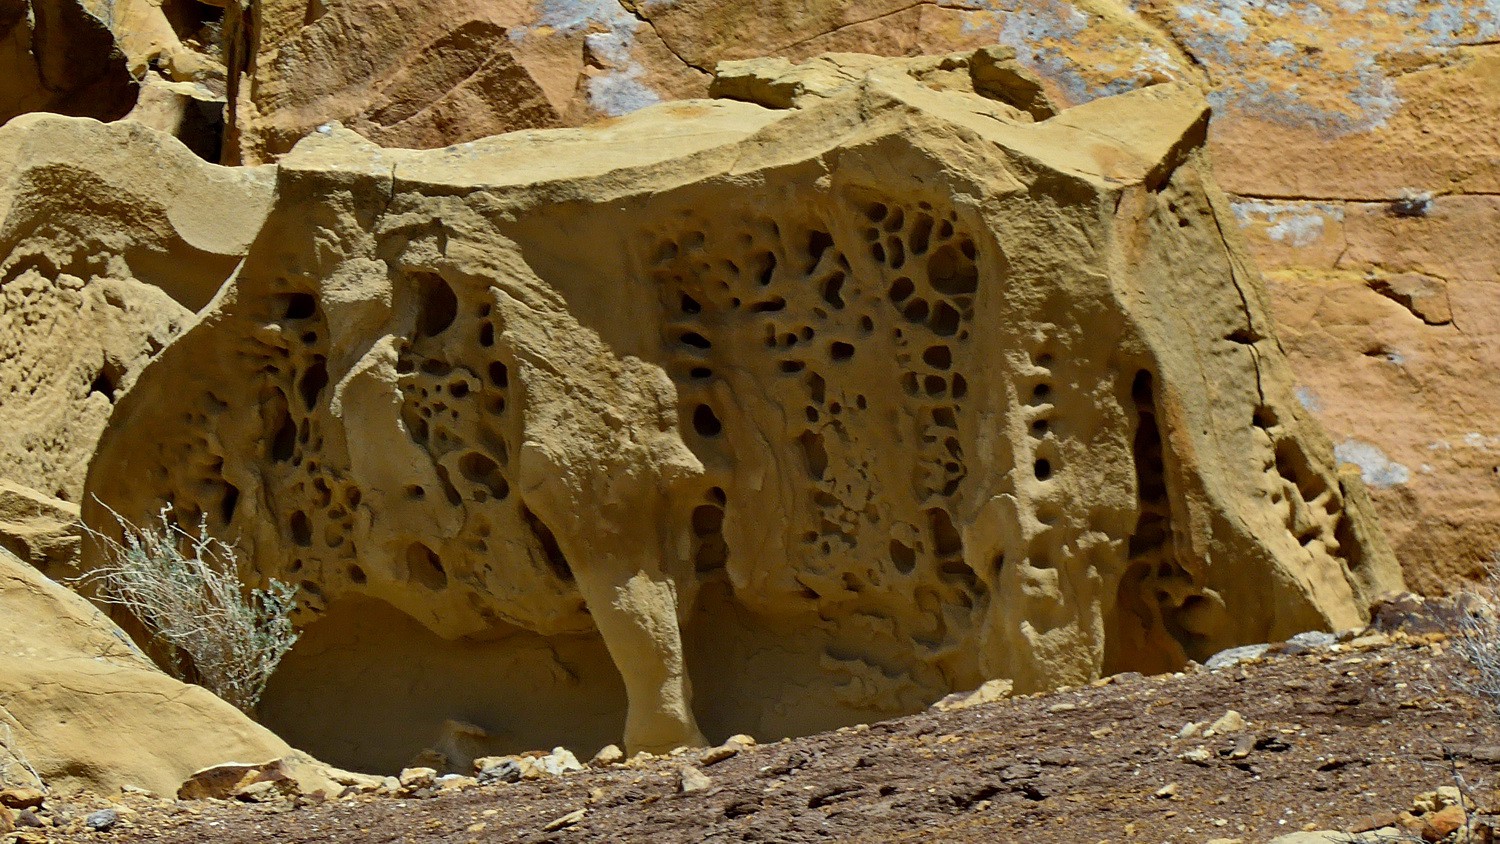 Weird rock on the Petroglyph trail